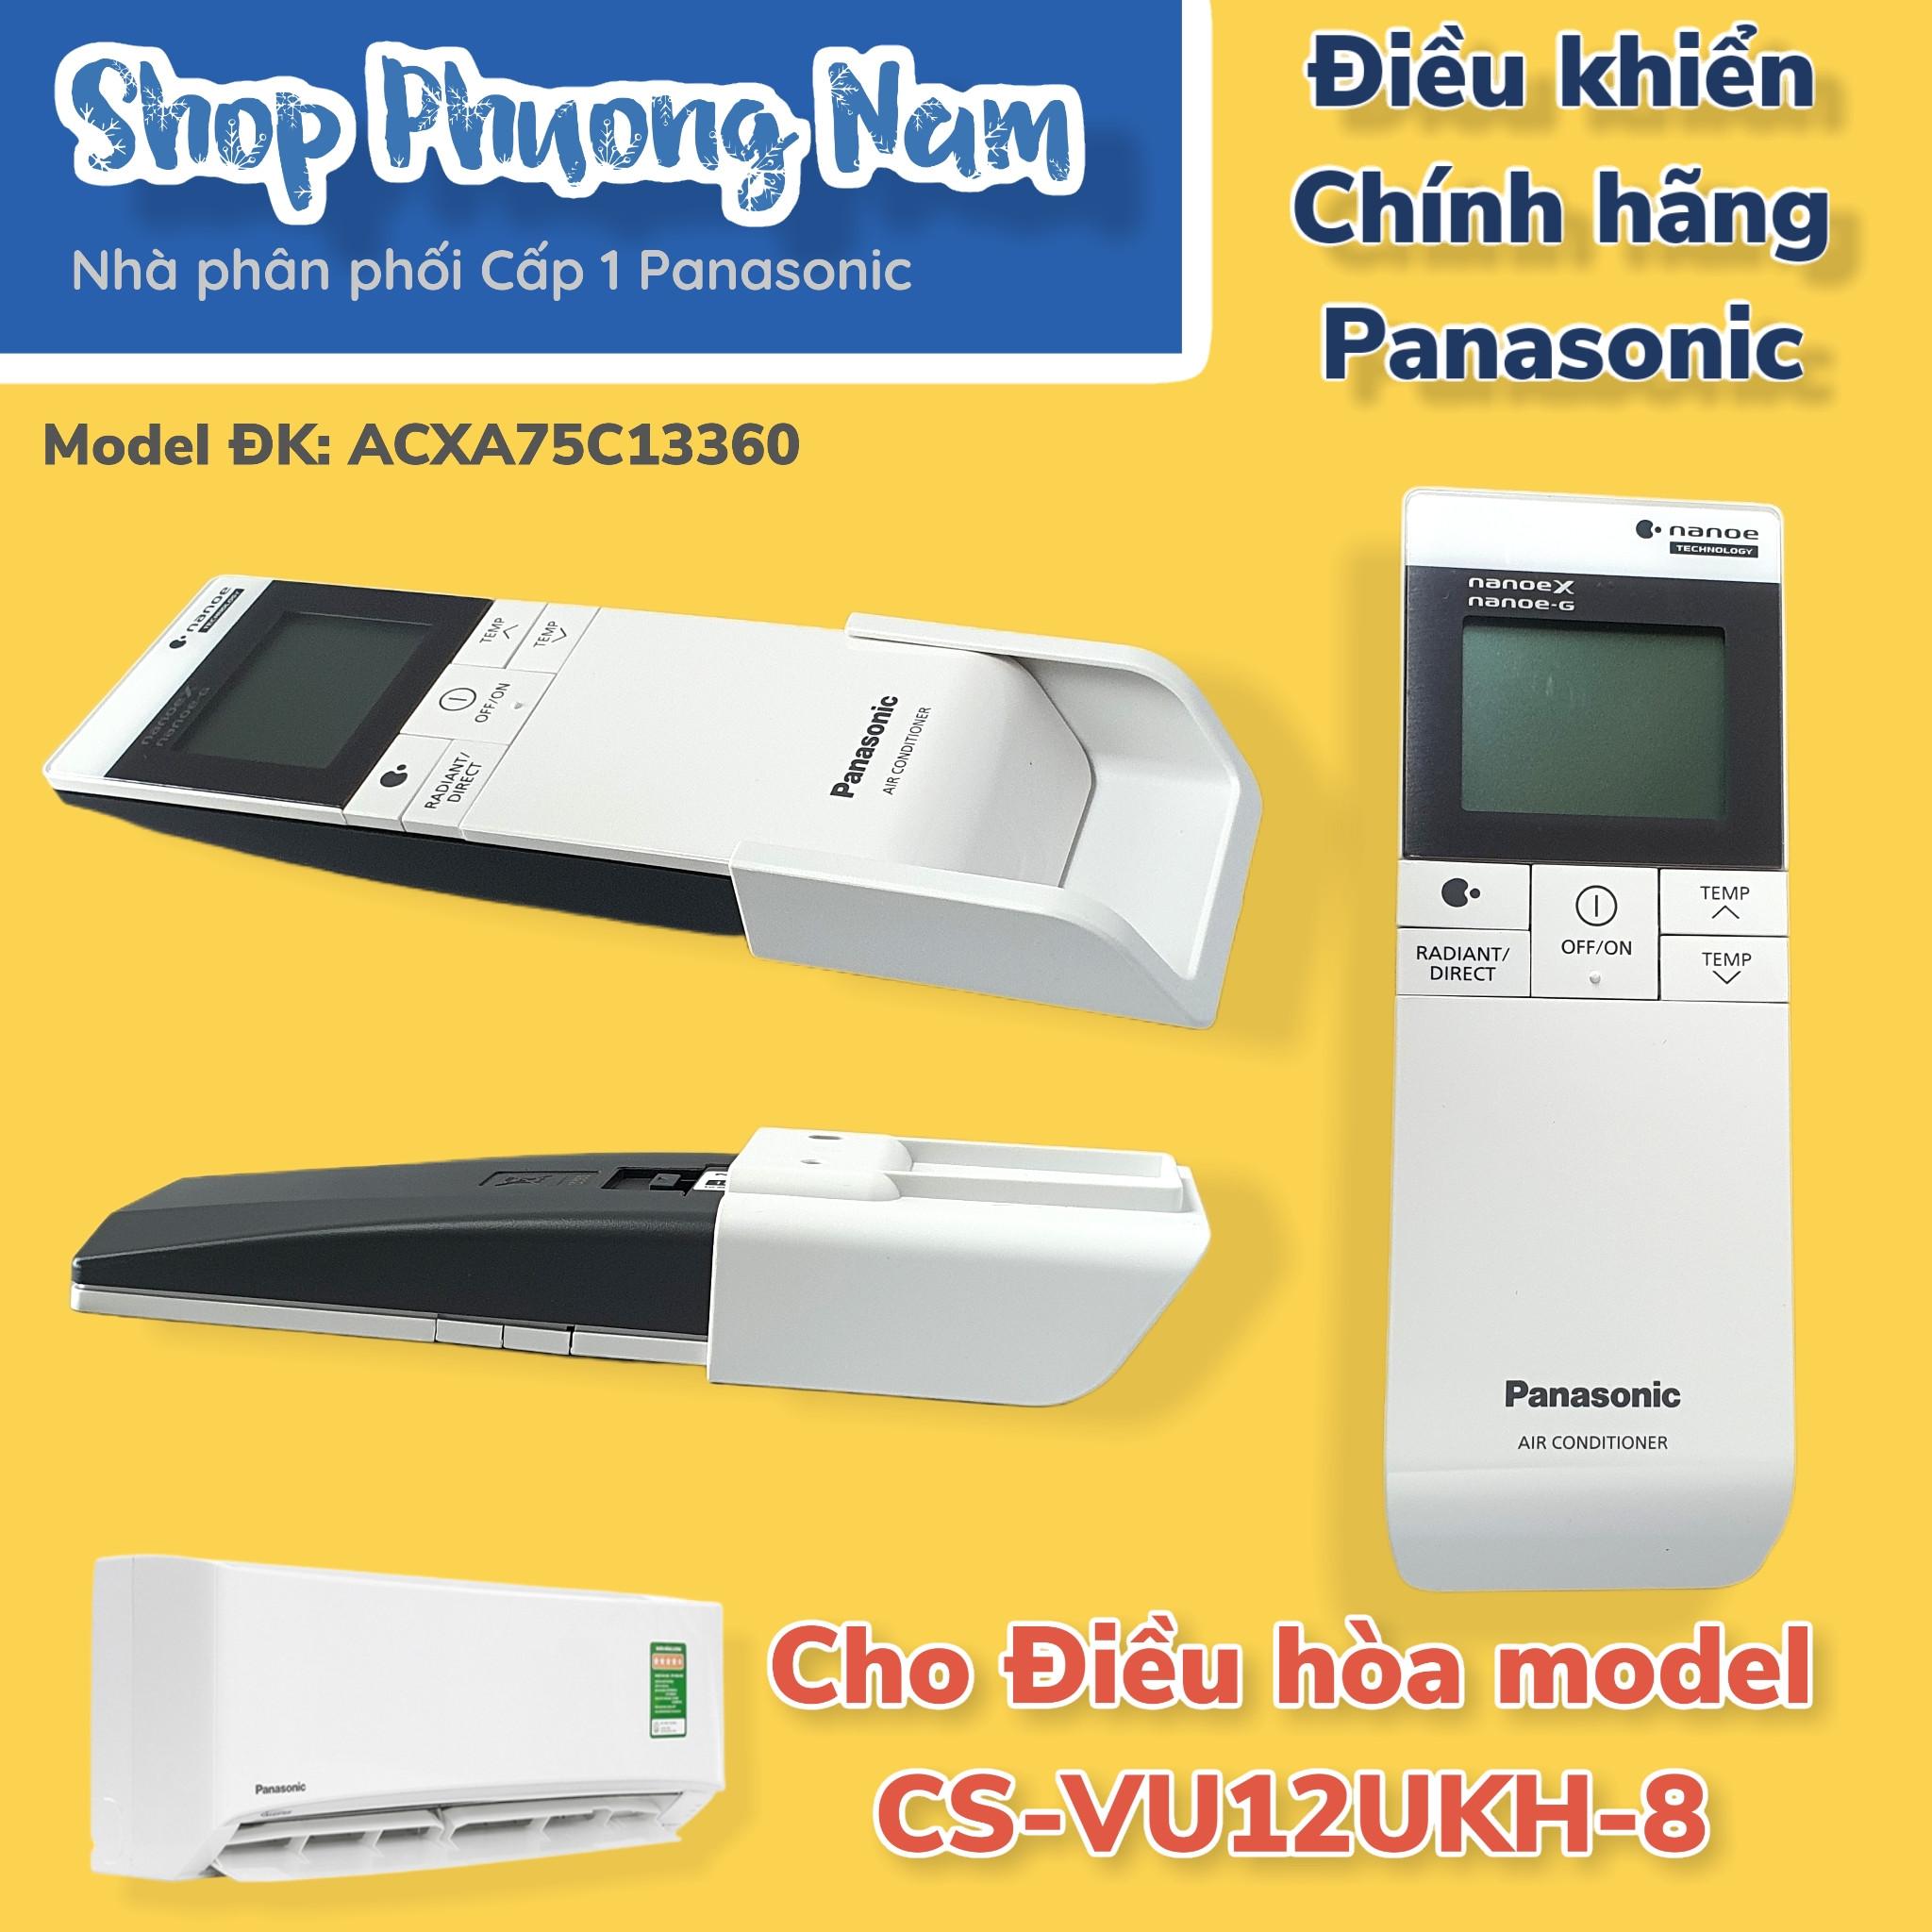 Điều khiển chính hãng cho điều hòa Panasonic model CS-VU12UKH-8